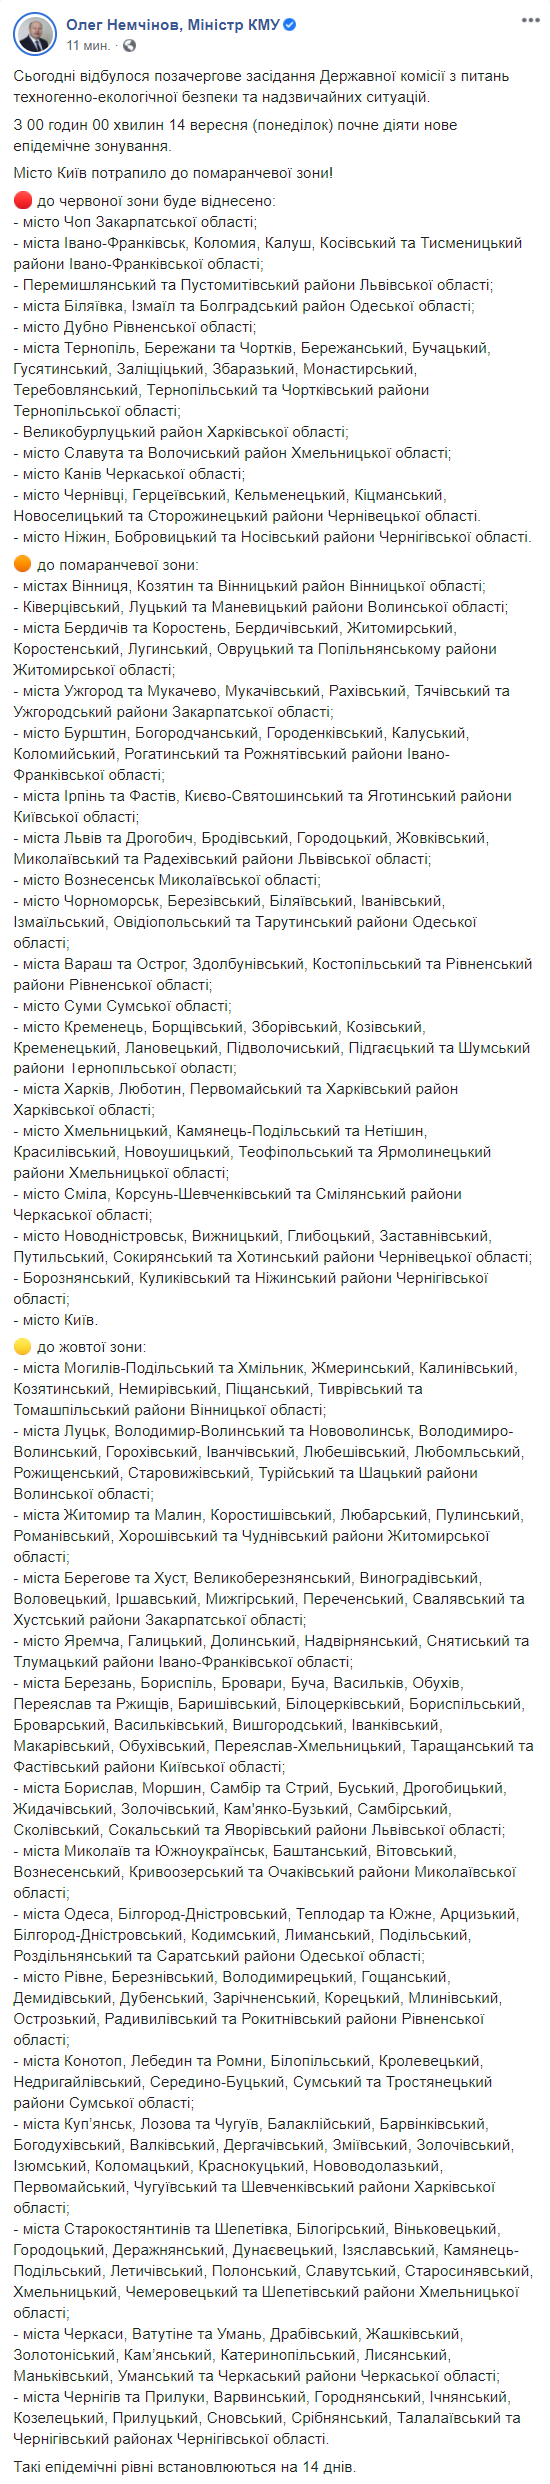 Полтора десятка украинских городов в красной зоне, Киев - "оранжевый". Новое эпидемическое зонирование Украины. Скриншот: Немчинов в Фейсбук